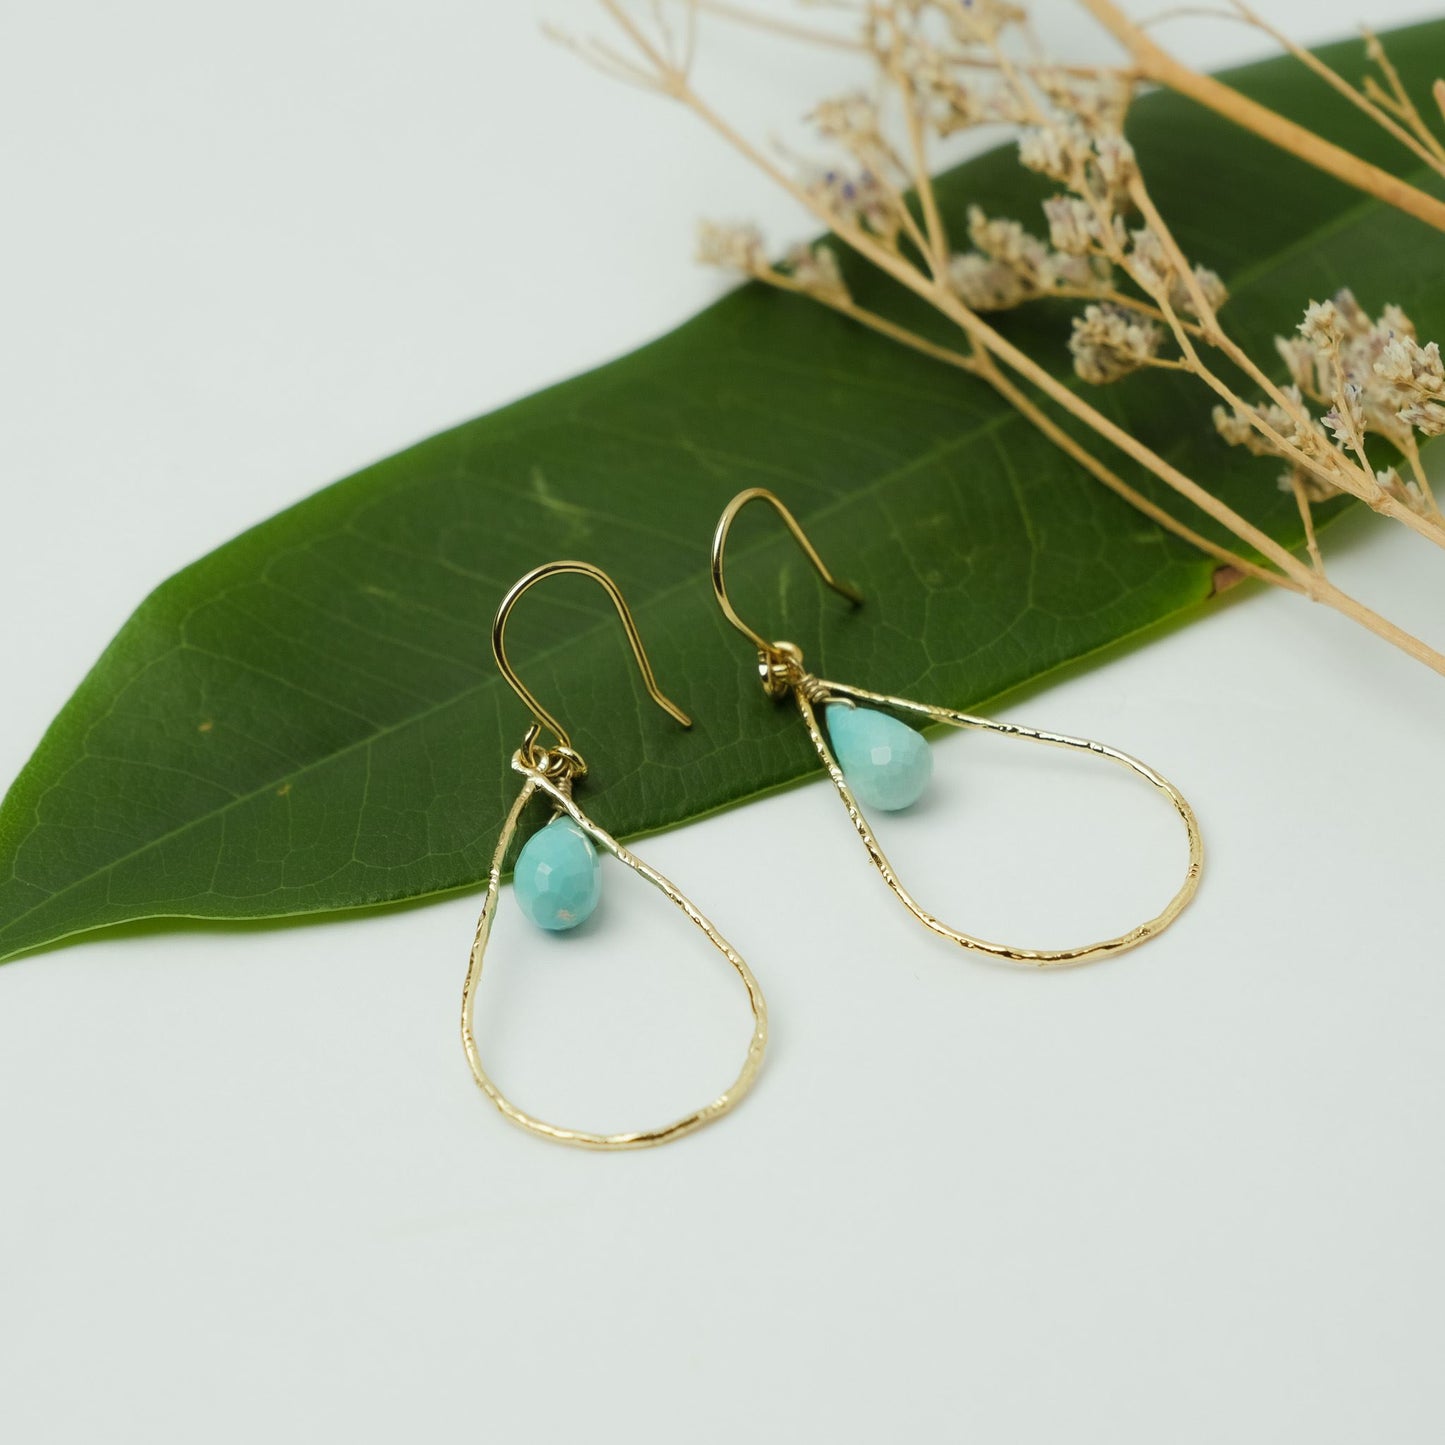 Turquoise Shizuku motif hook earrings